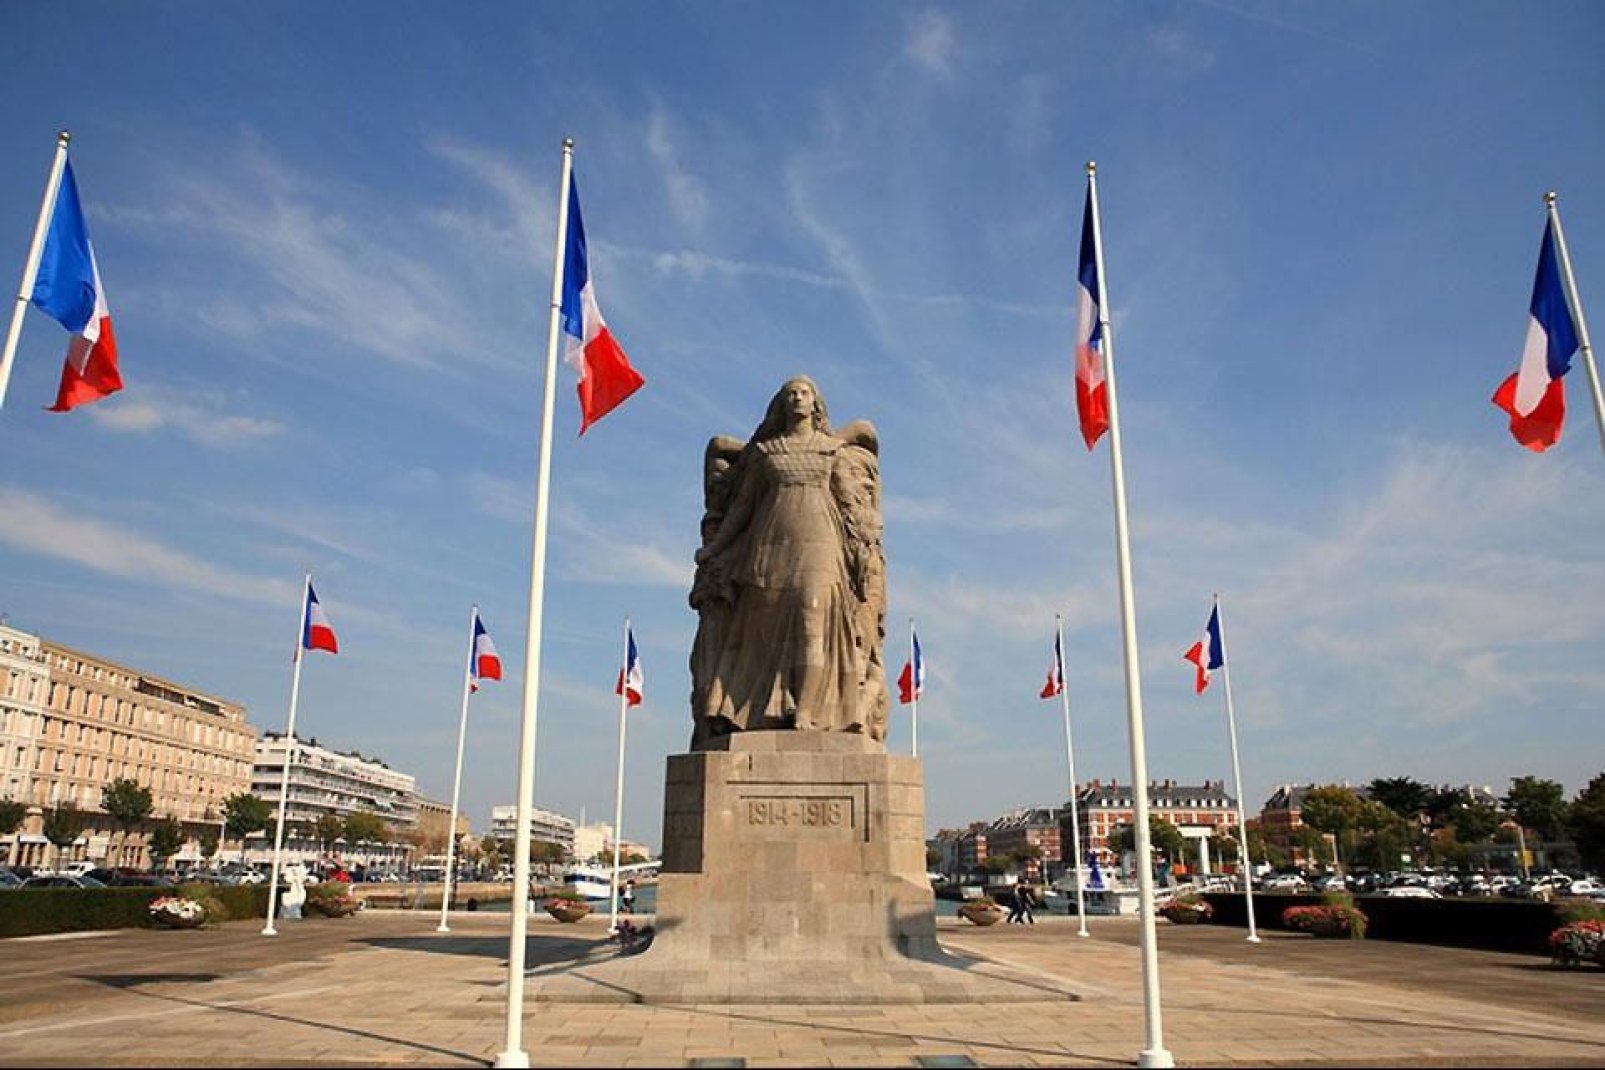 Das Stadtzentrum von Le Havre wurde während des Zweiten Weltkriegs vollständig zerstört und zwischen 1945 und 1964 zur Gänze wieder aufgebaut. Die Altstadt ist heute Teil des UNESCO-Weltkulturerbes.